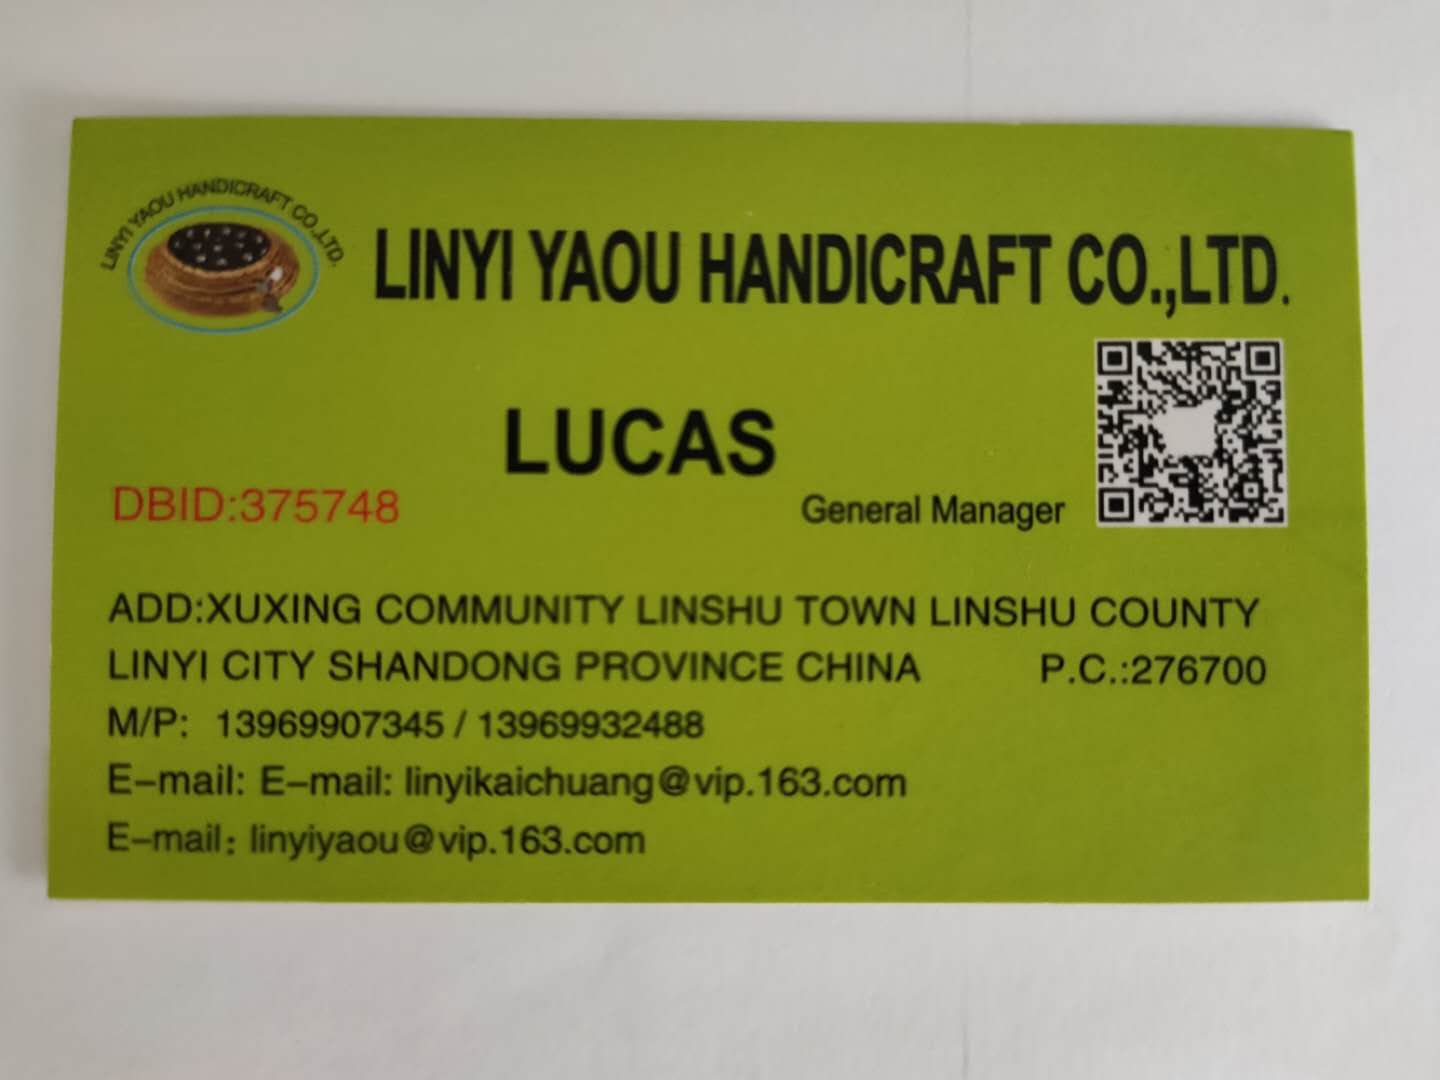 LINYI YAOU HANDICRAFT CO., LTD